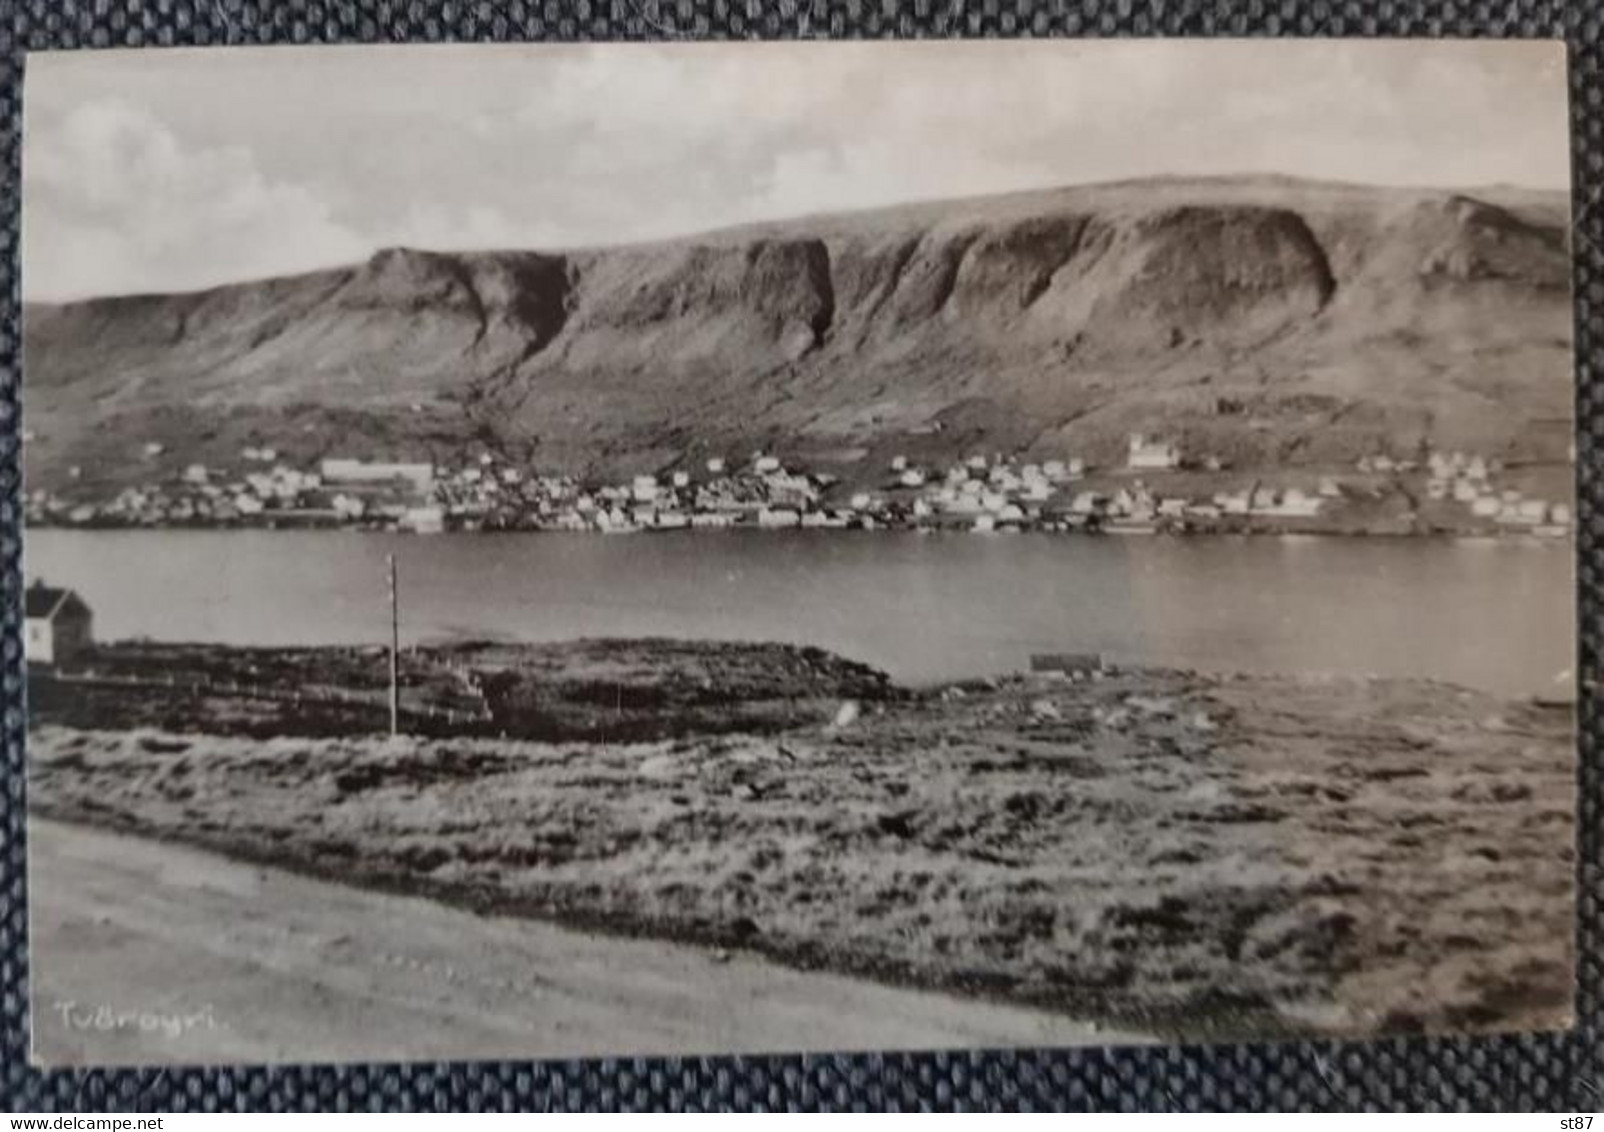 Faroe Tvöroyri - Färöer